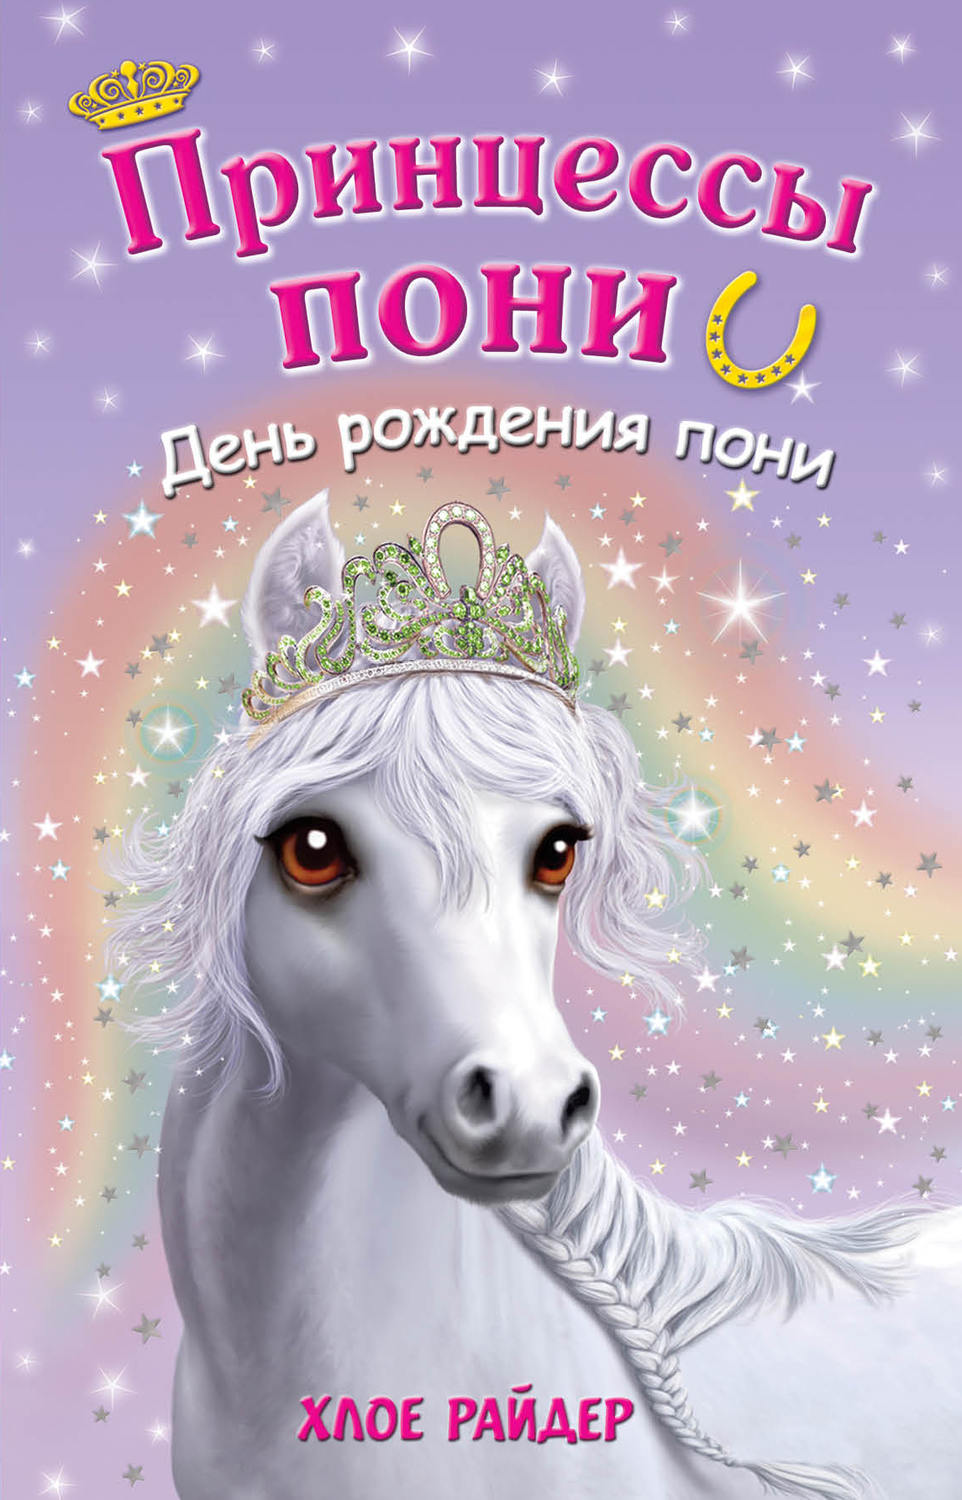 Дружба это Чудо My Little Pony: Приглашения на день Рождения с пони